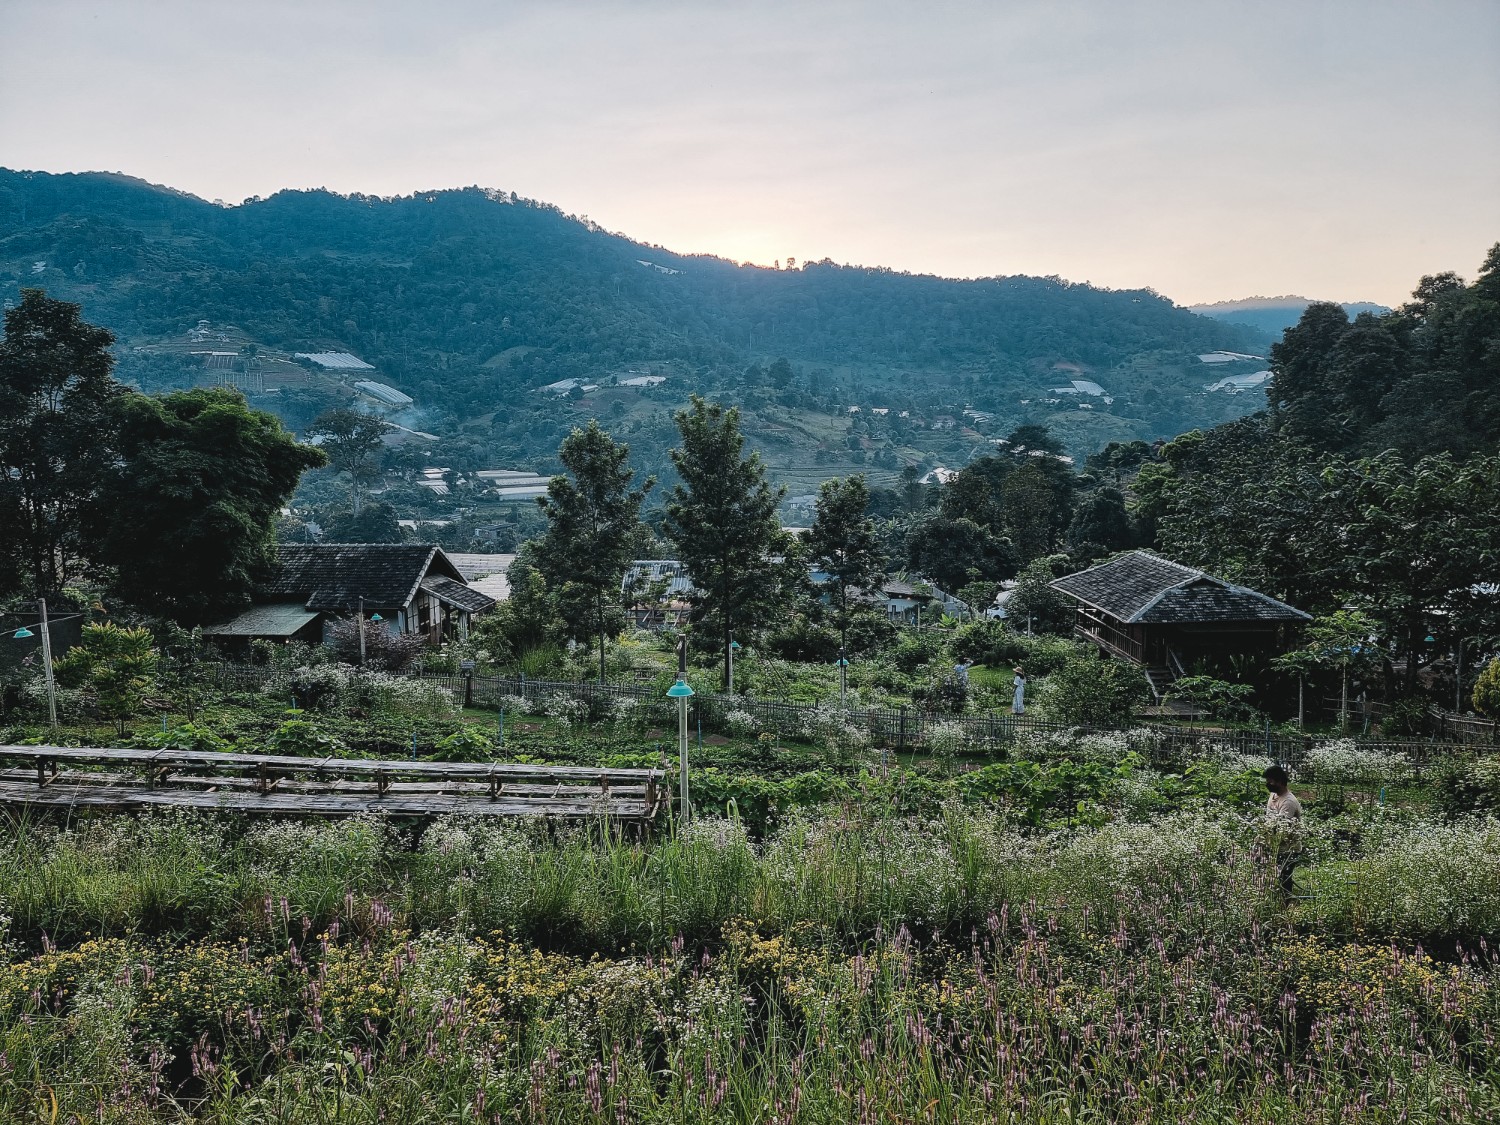 รีวิว Mori natural farm ที่พักฟาร์มสไตล์ญี่ปุ่นในหุบเขา อ.แม่ริม จ.